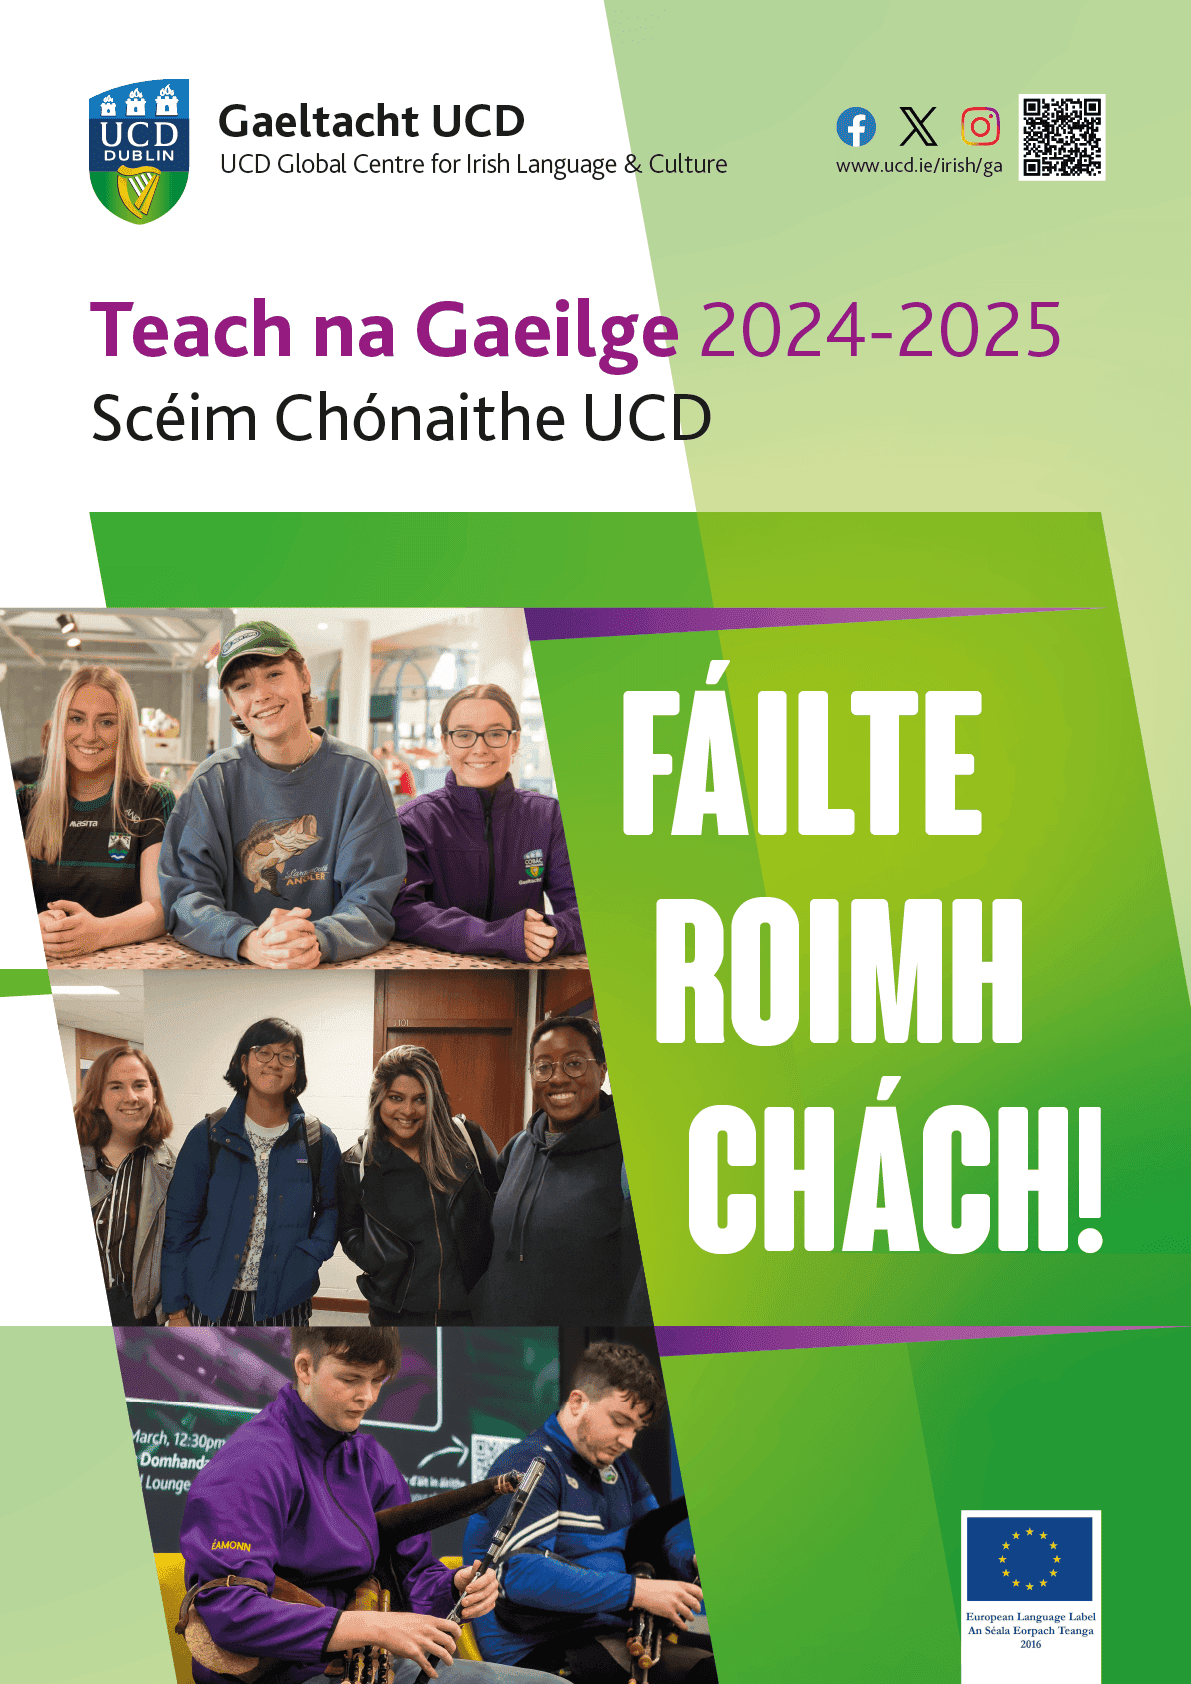 Scoláireachtaí i dTeach na Gaeilge 2024-2025